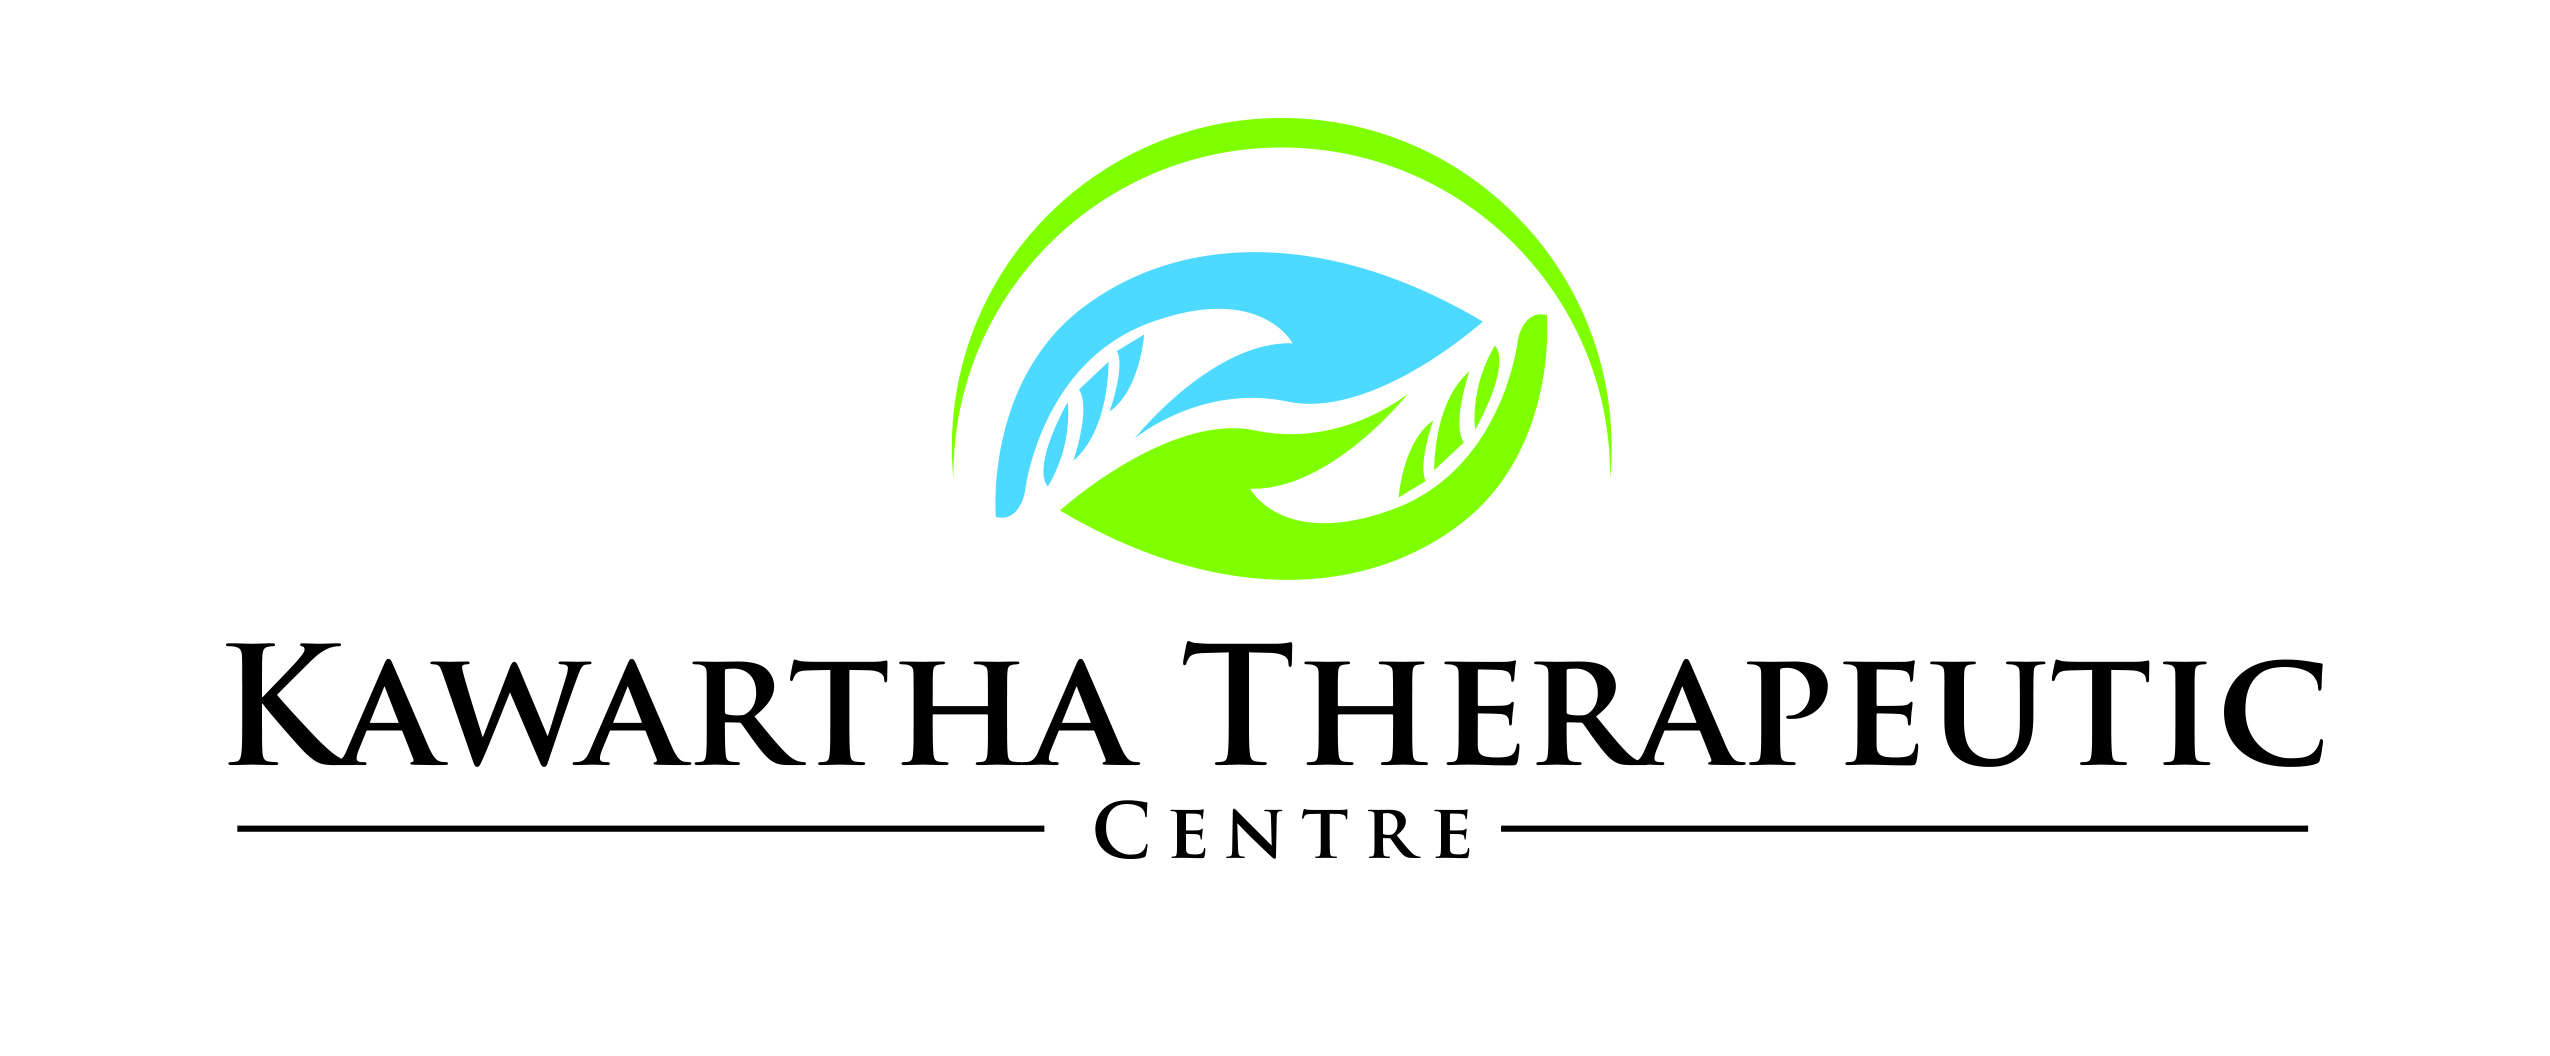 Kawartha Therapeutic Centre